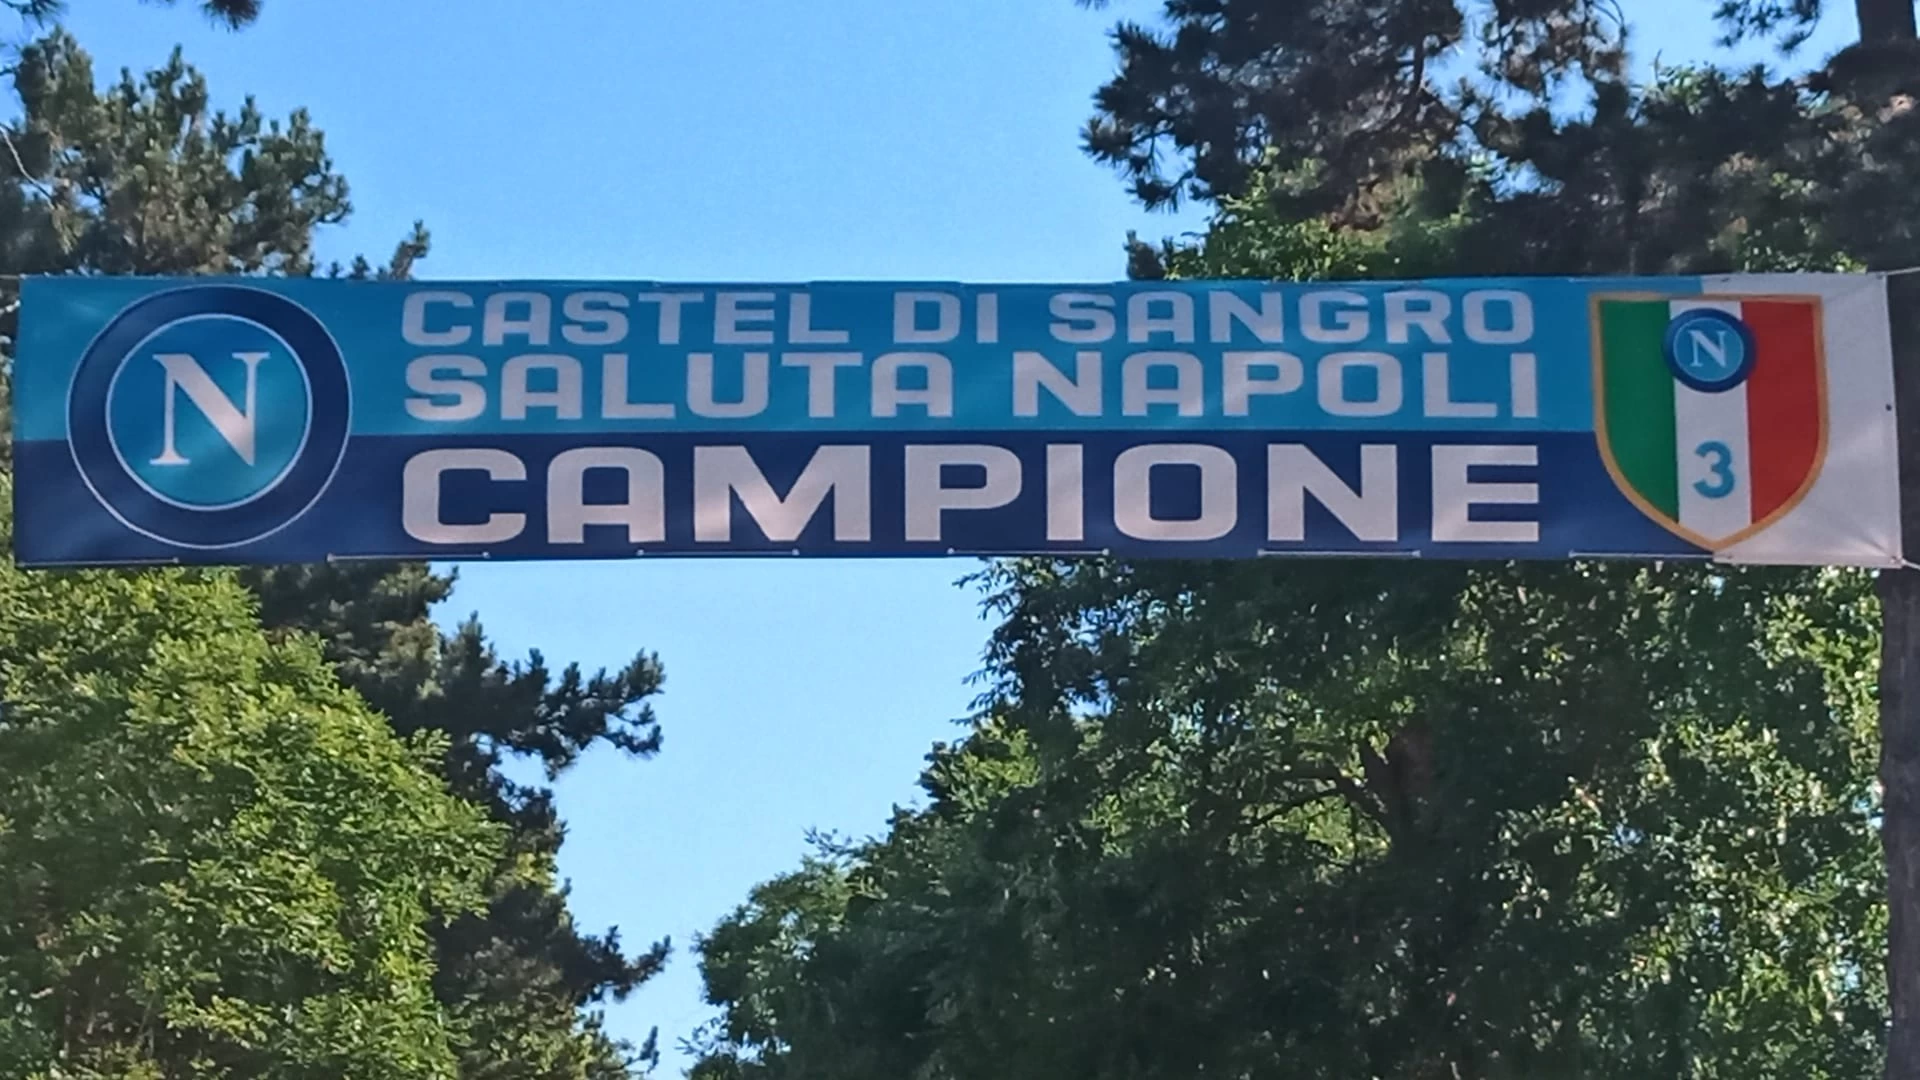 Castel Di Sangro si prepara ad accogliere i “Campioni d’Italia”. Mega striscione all’ingresso della città. L’otto agosto possibile allenamento congiunto con la squadra locale.